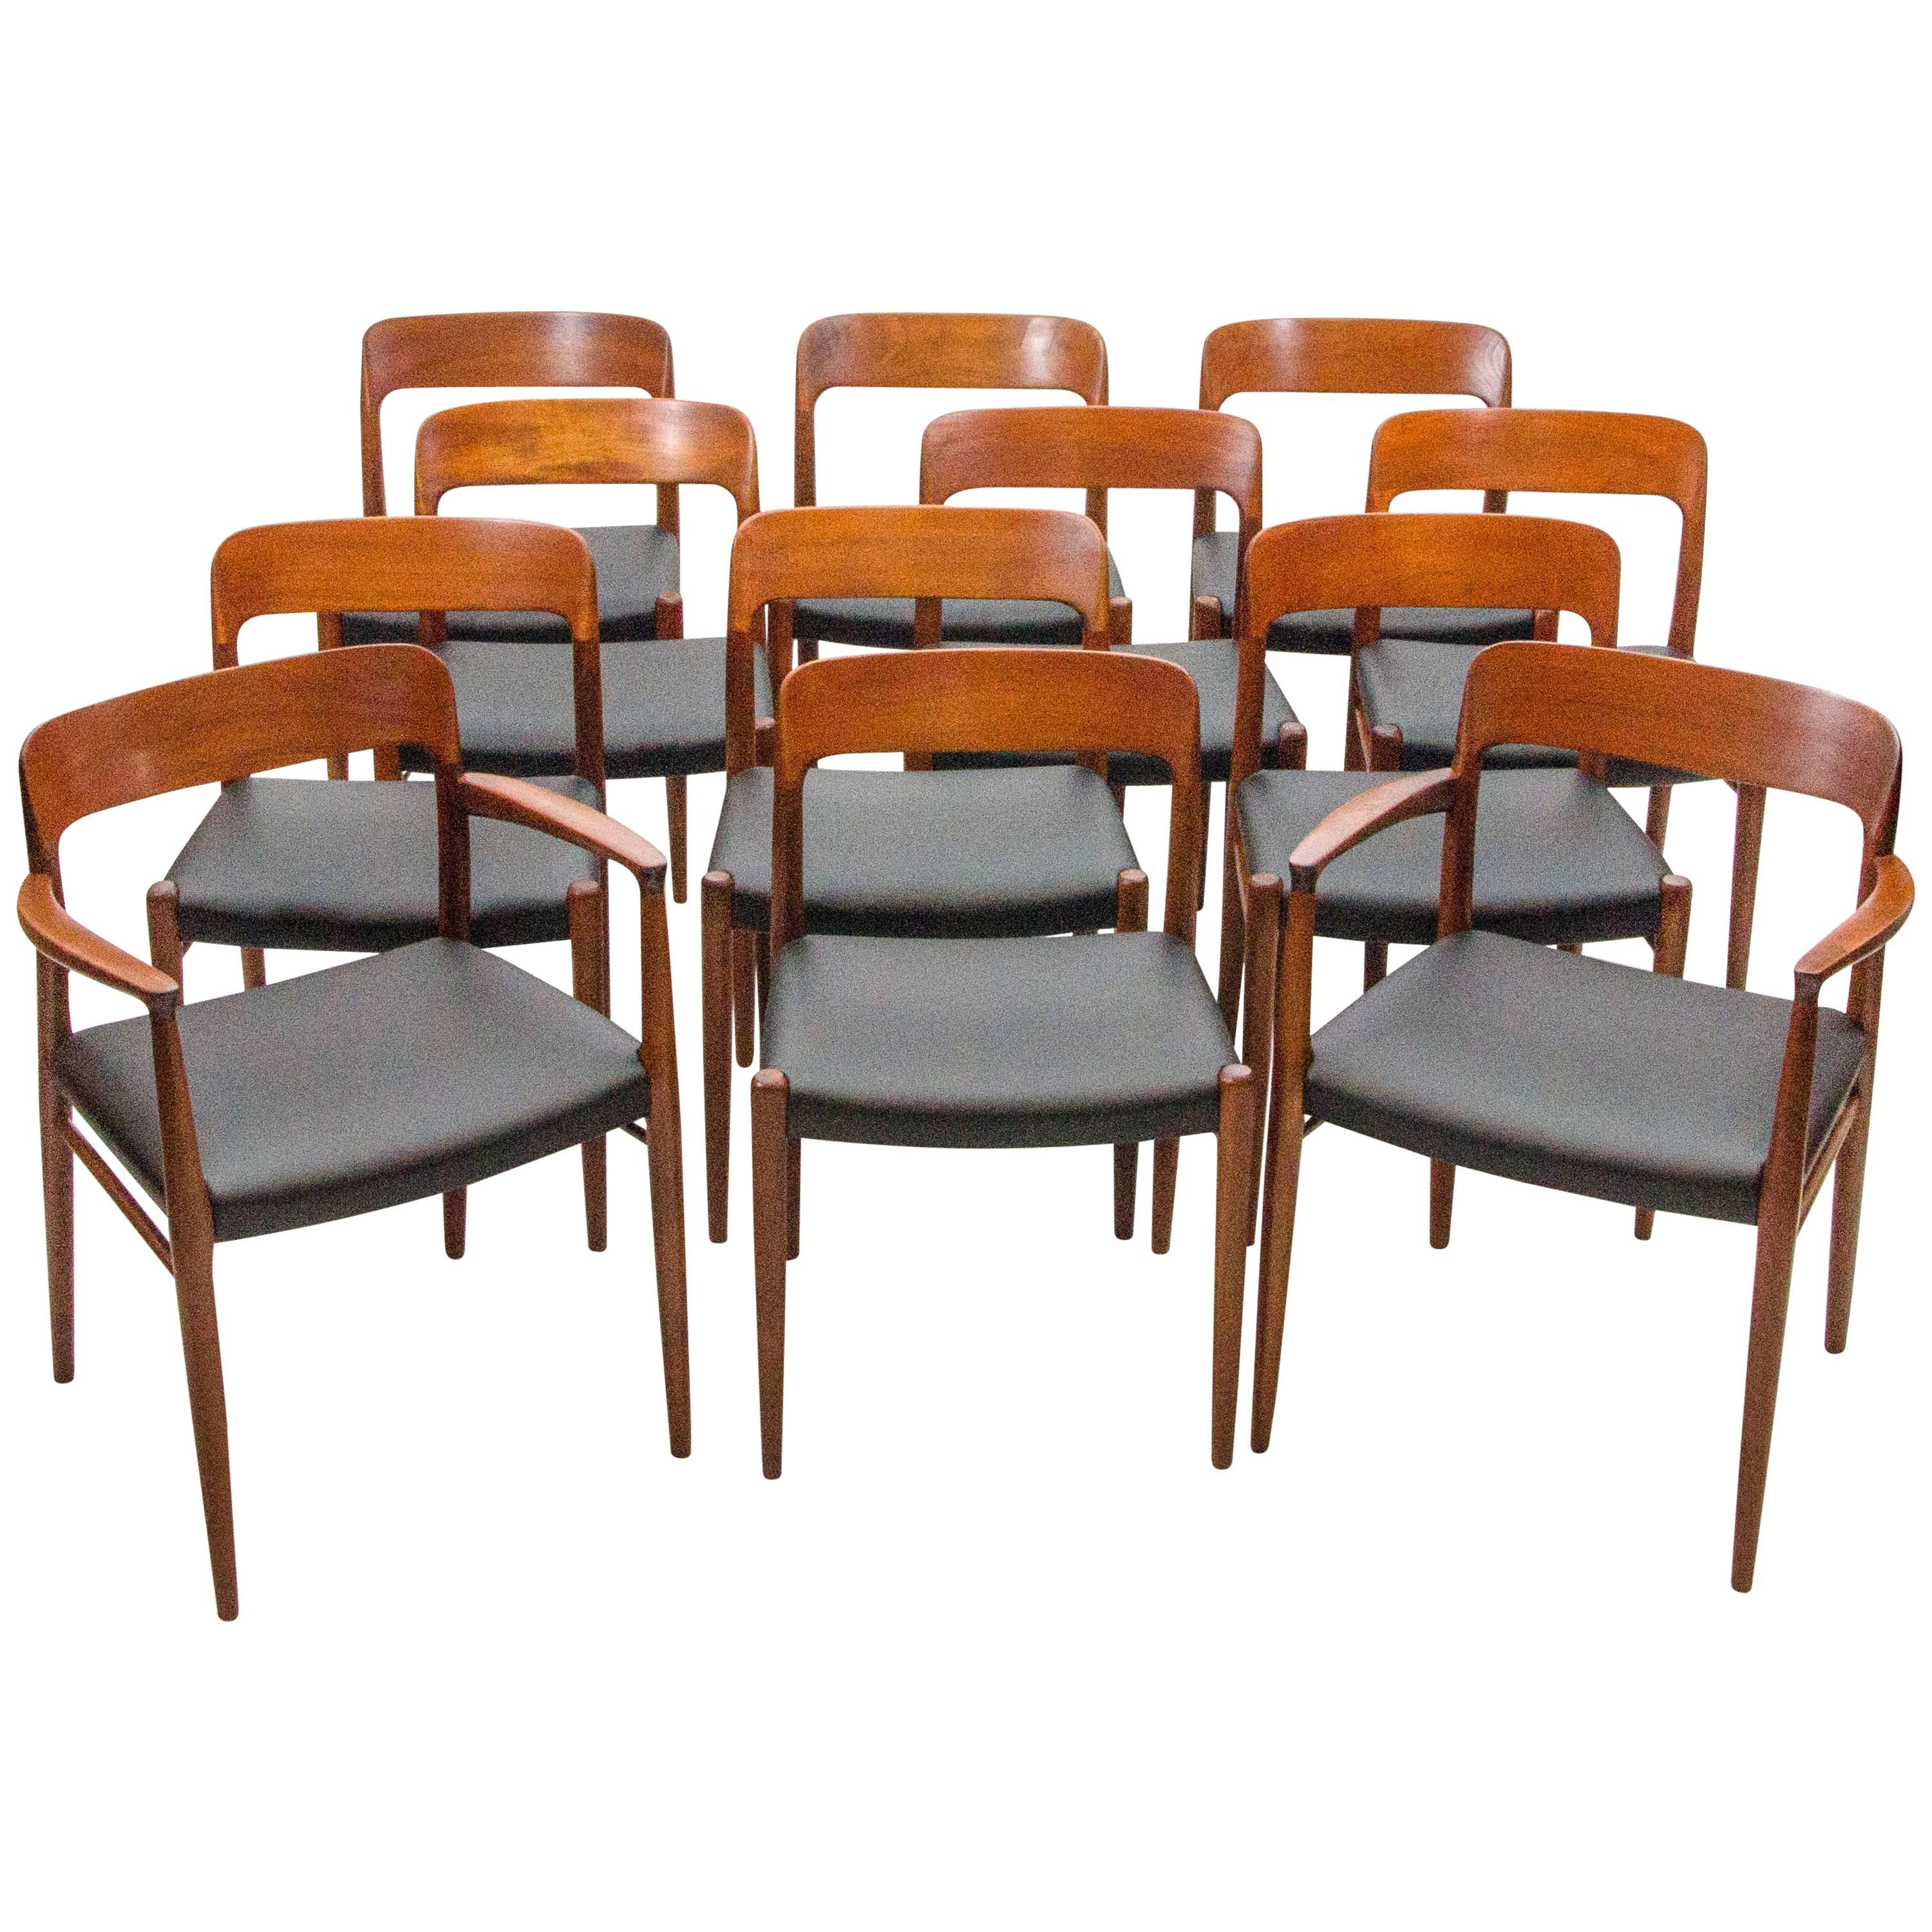 Set of 12 Danish Teak Dining Chairs by N. O. Møller for J. L. Møller Mobelfabrik